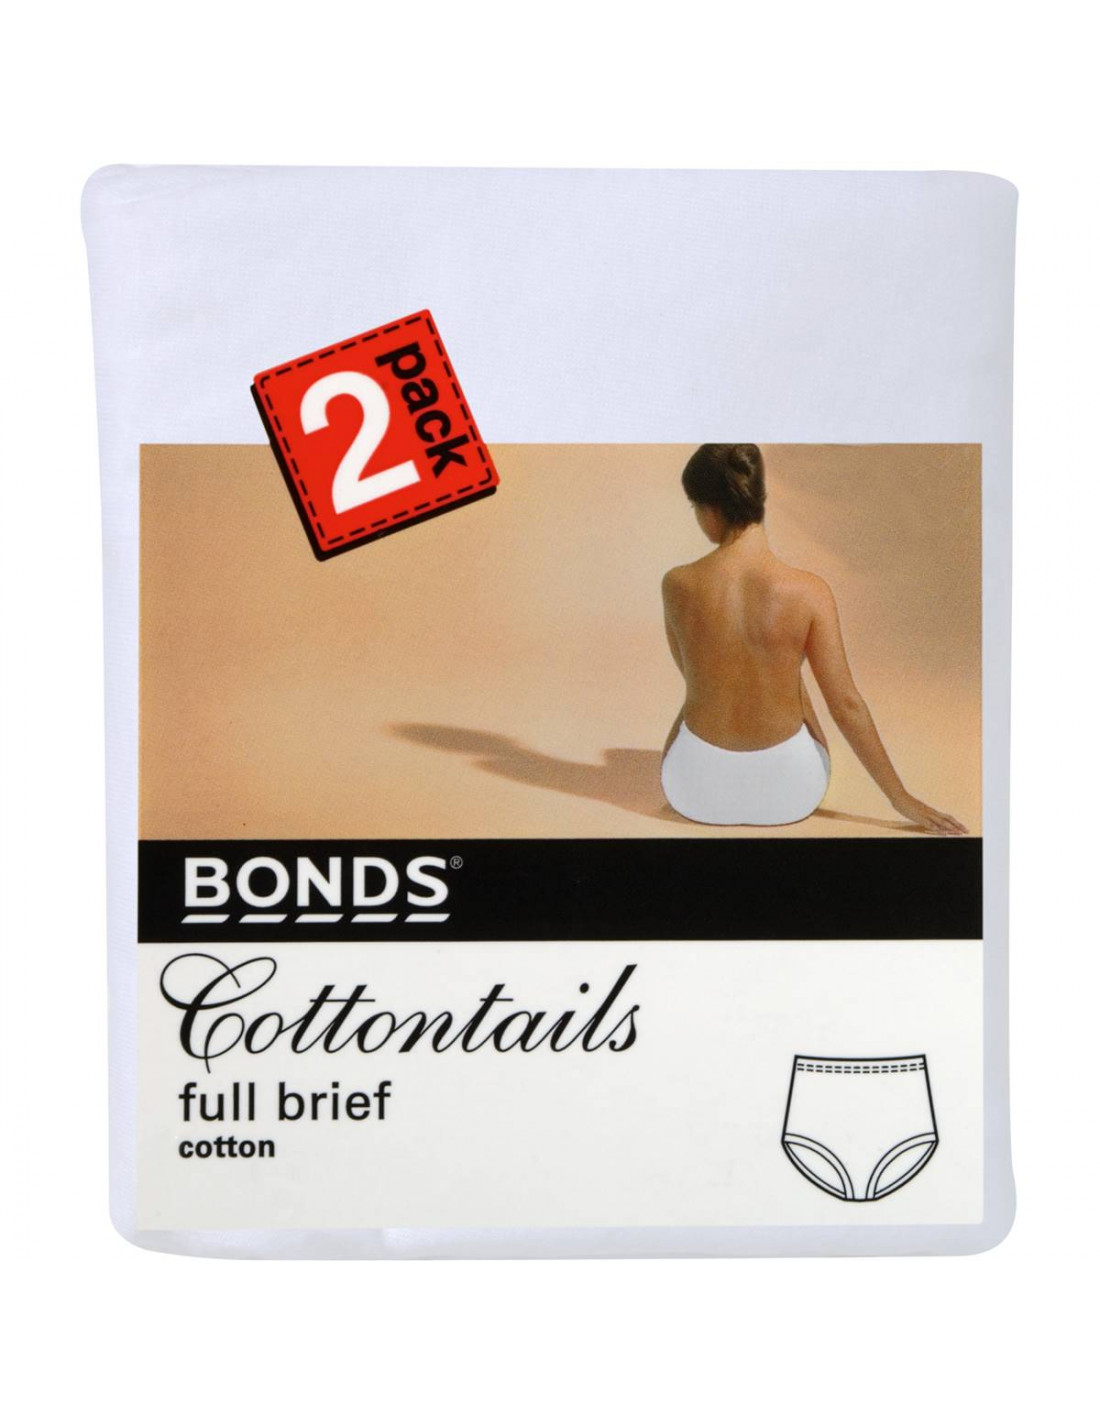 https://www.allysbasket.com/54019-thickbox_default/bonds-womens-underwear-cottontails-size-16-2-pack.jpg